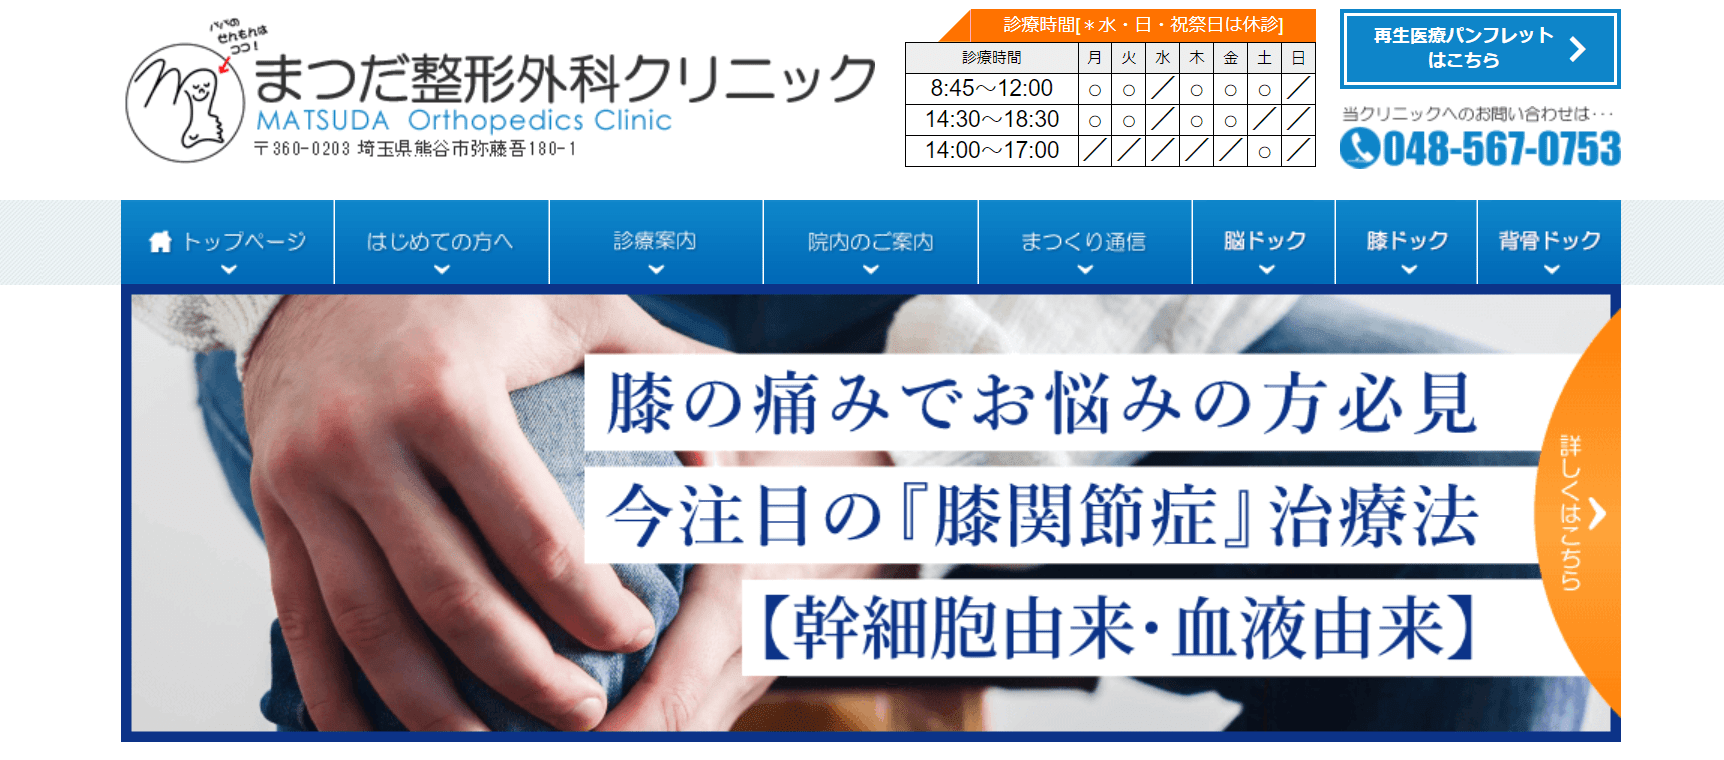 埼玉県で評判の膝関節治療におすすめのクリニック10選 まつだ整形外科クリニック